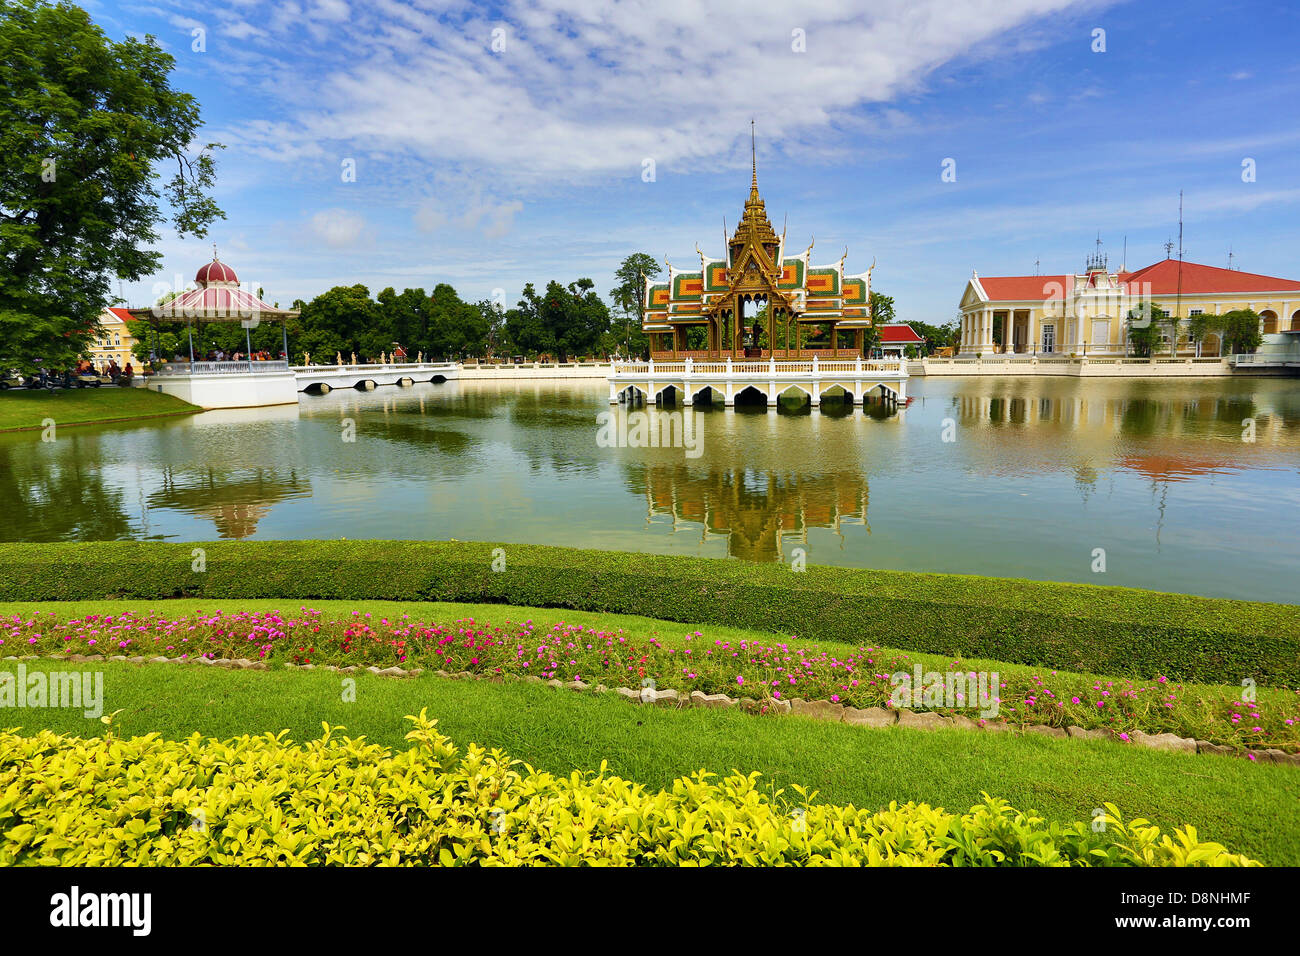 Aisawan-Dhipaya-Asana Pavilion, Bang Pa-In Summer Palace, Ayutthaya, Thaïlande Banque D'Images